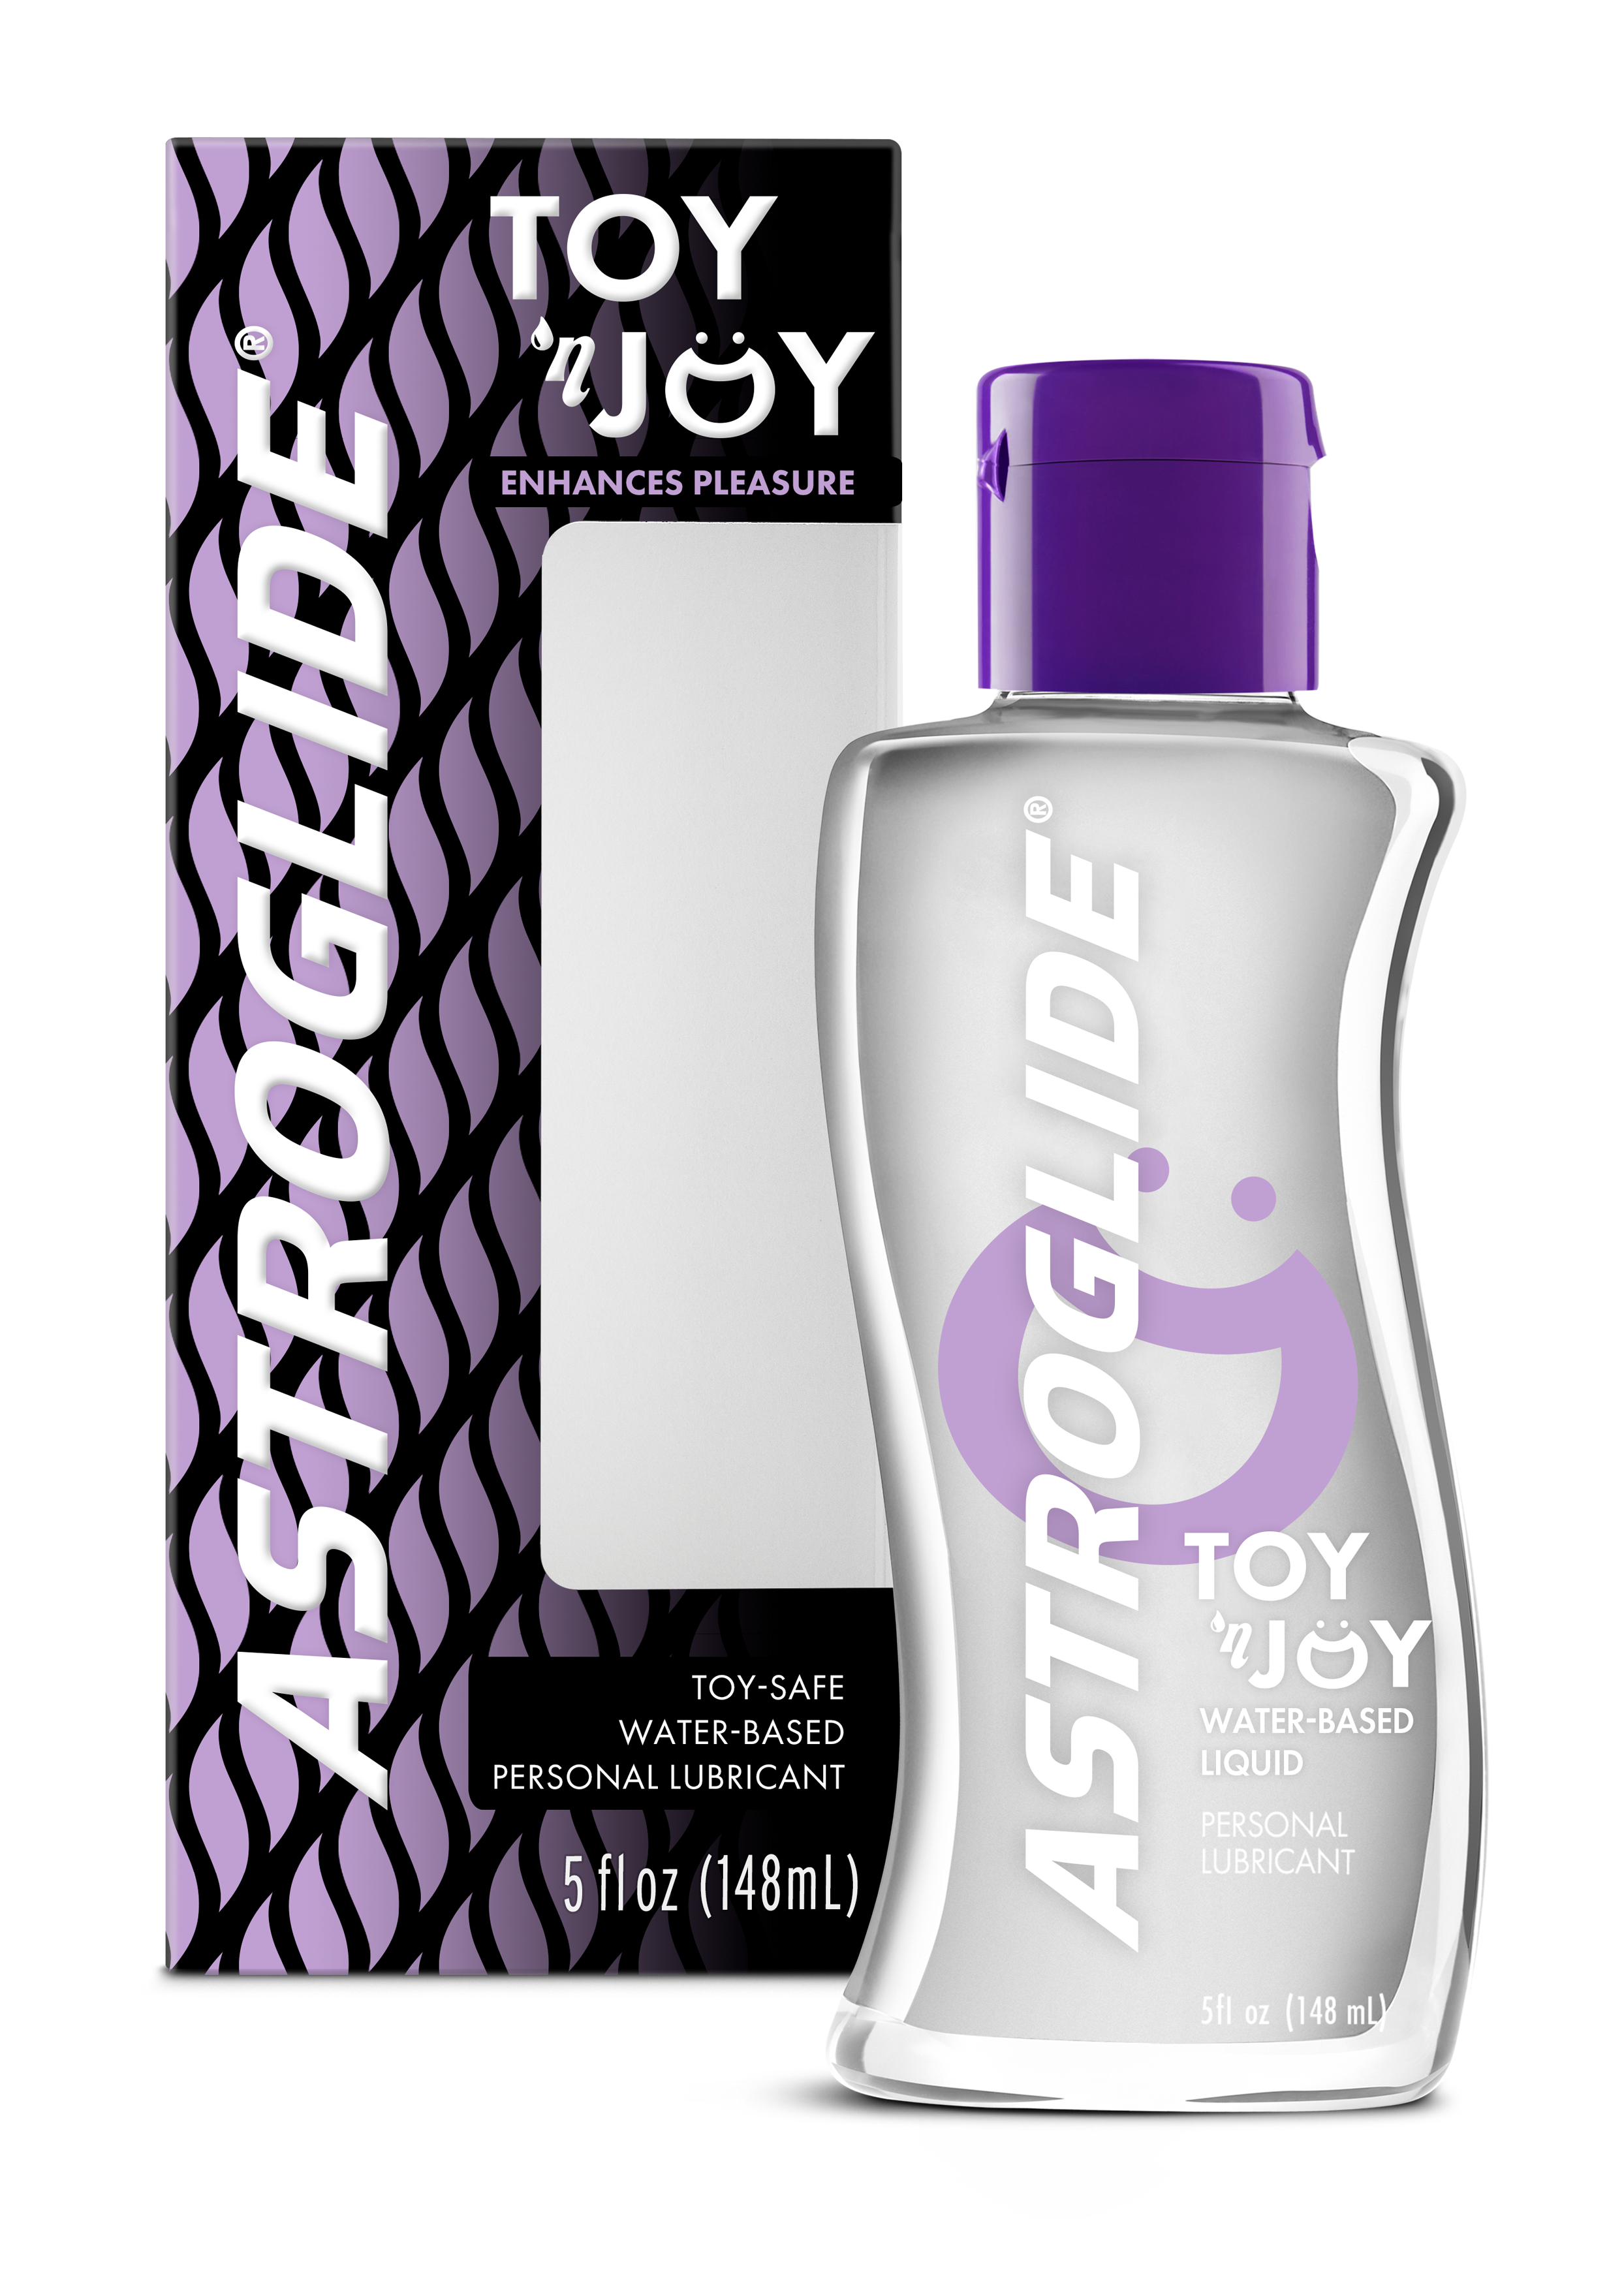 ASTROGLIDE Toy ‘n Joy™ Liquid